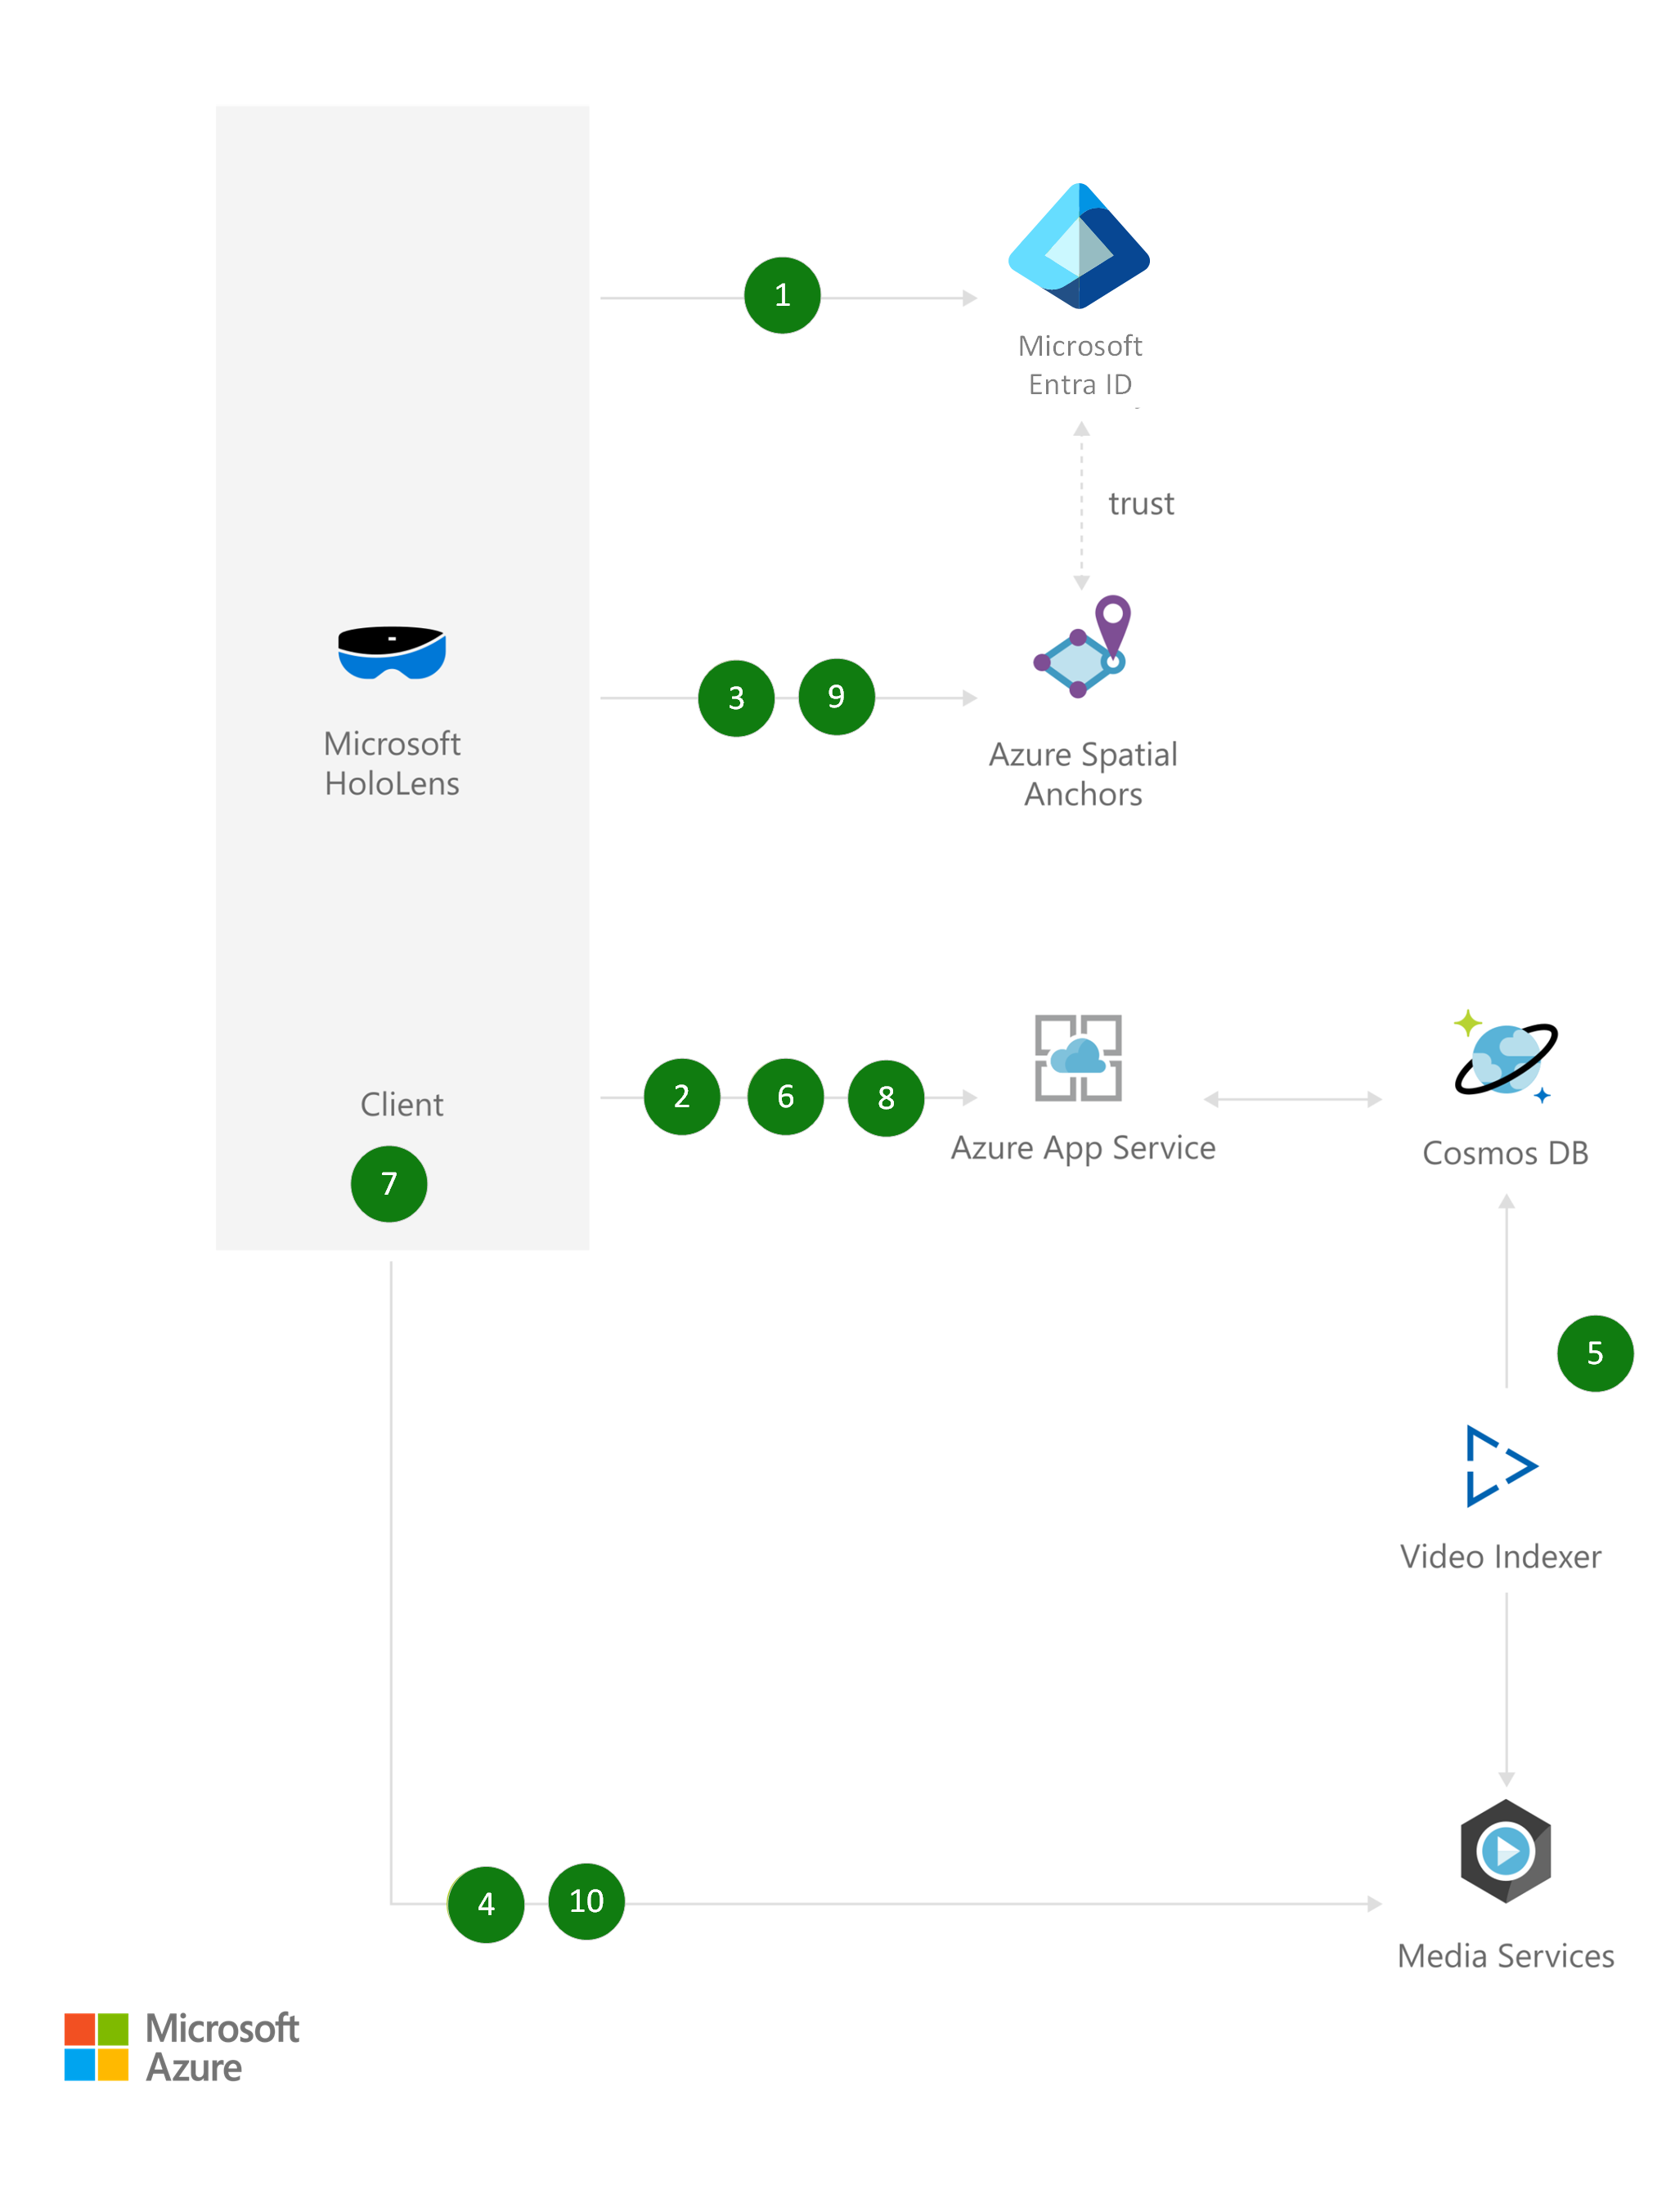 Az architektúradiagram a Microsoft Entra ID használatával végzett hitelesítést mutatja be a Microsoft Hololens használatával.